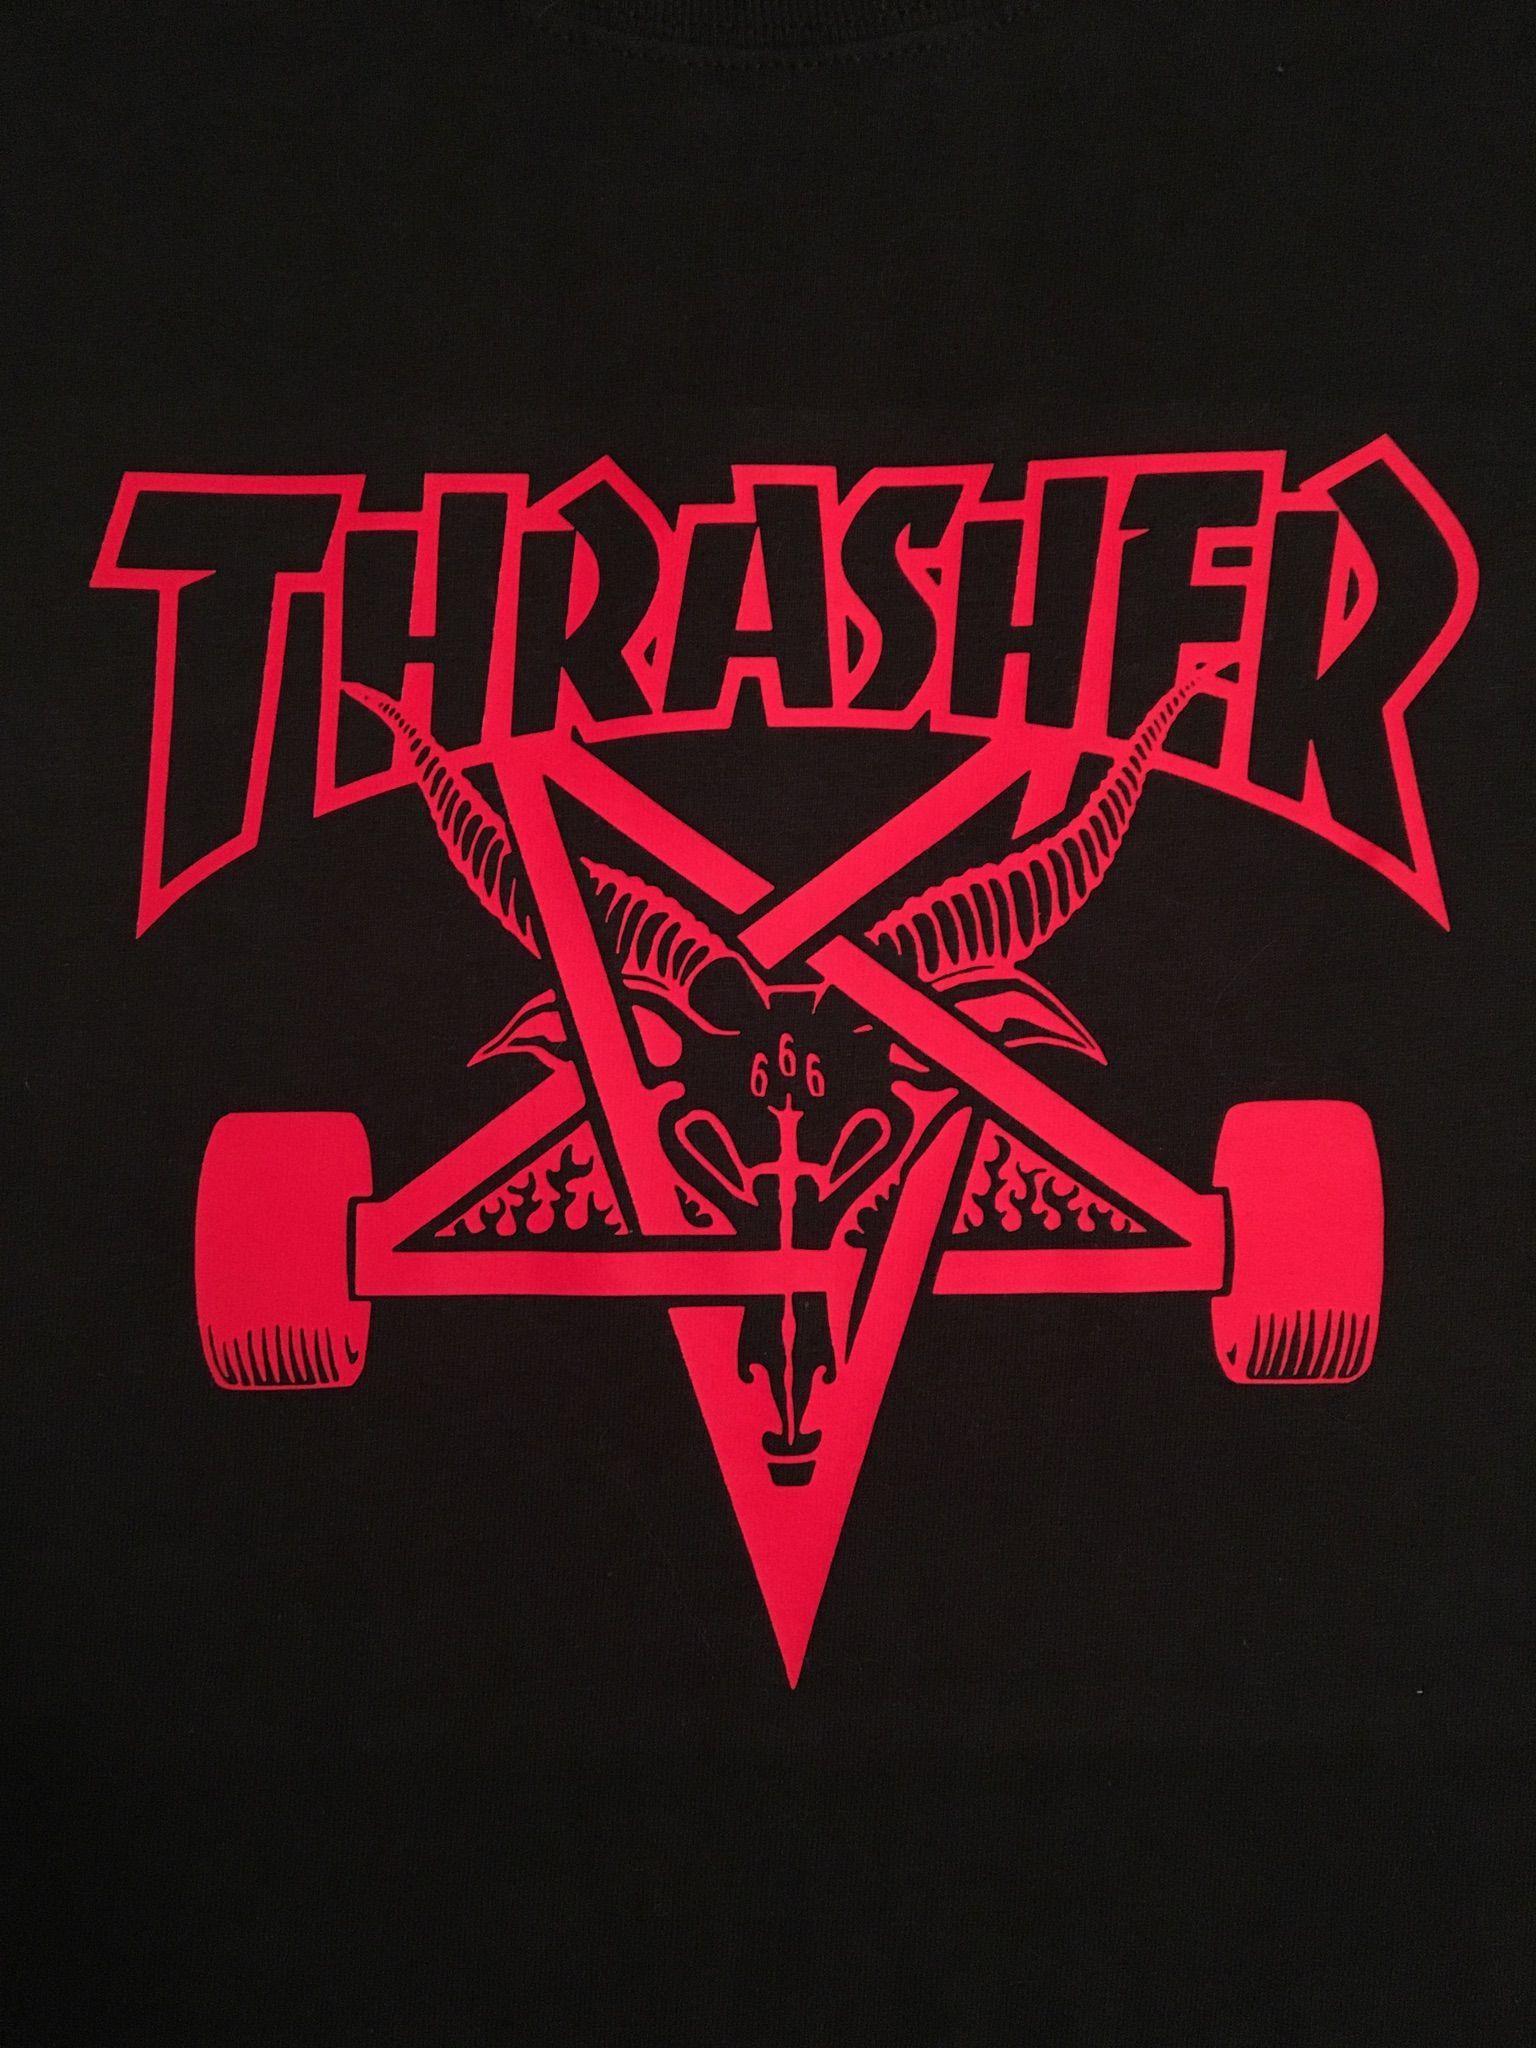 Thrasher Skate Logo - Thrasher Skateboard Magazine, Skate Goat | DIY shirts in 2019 ...